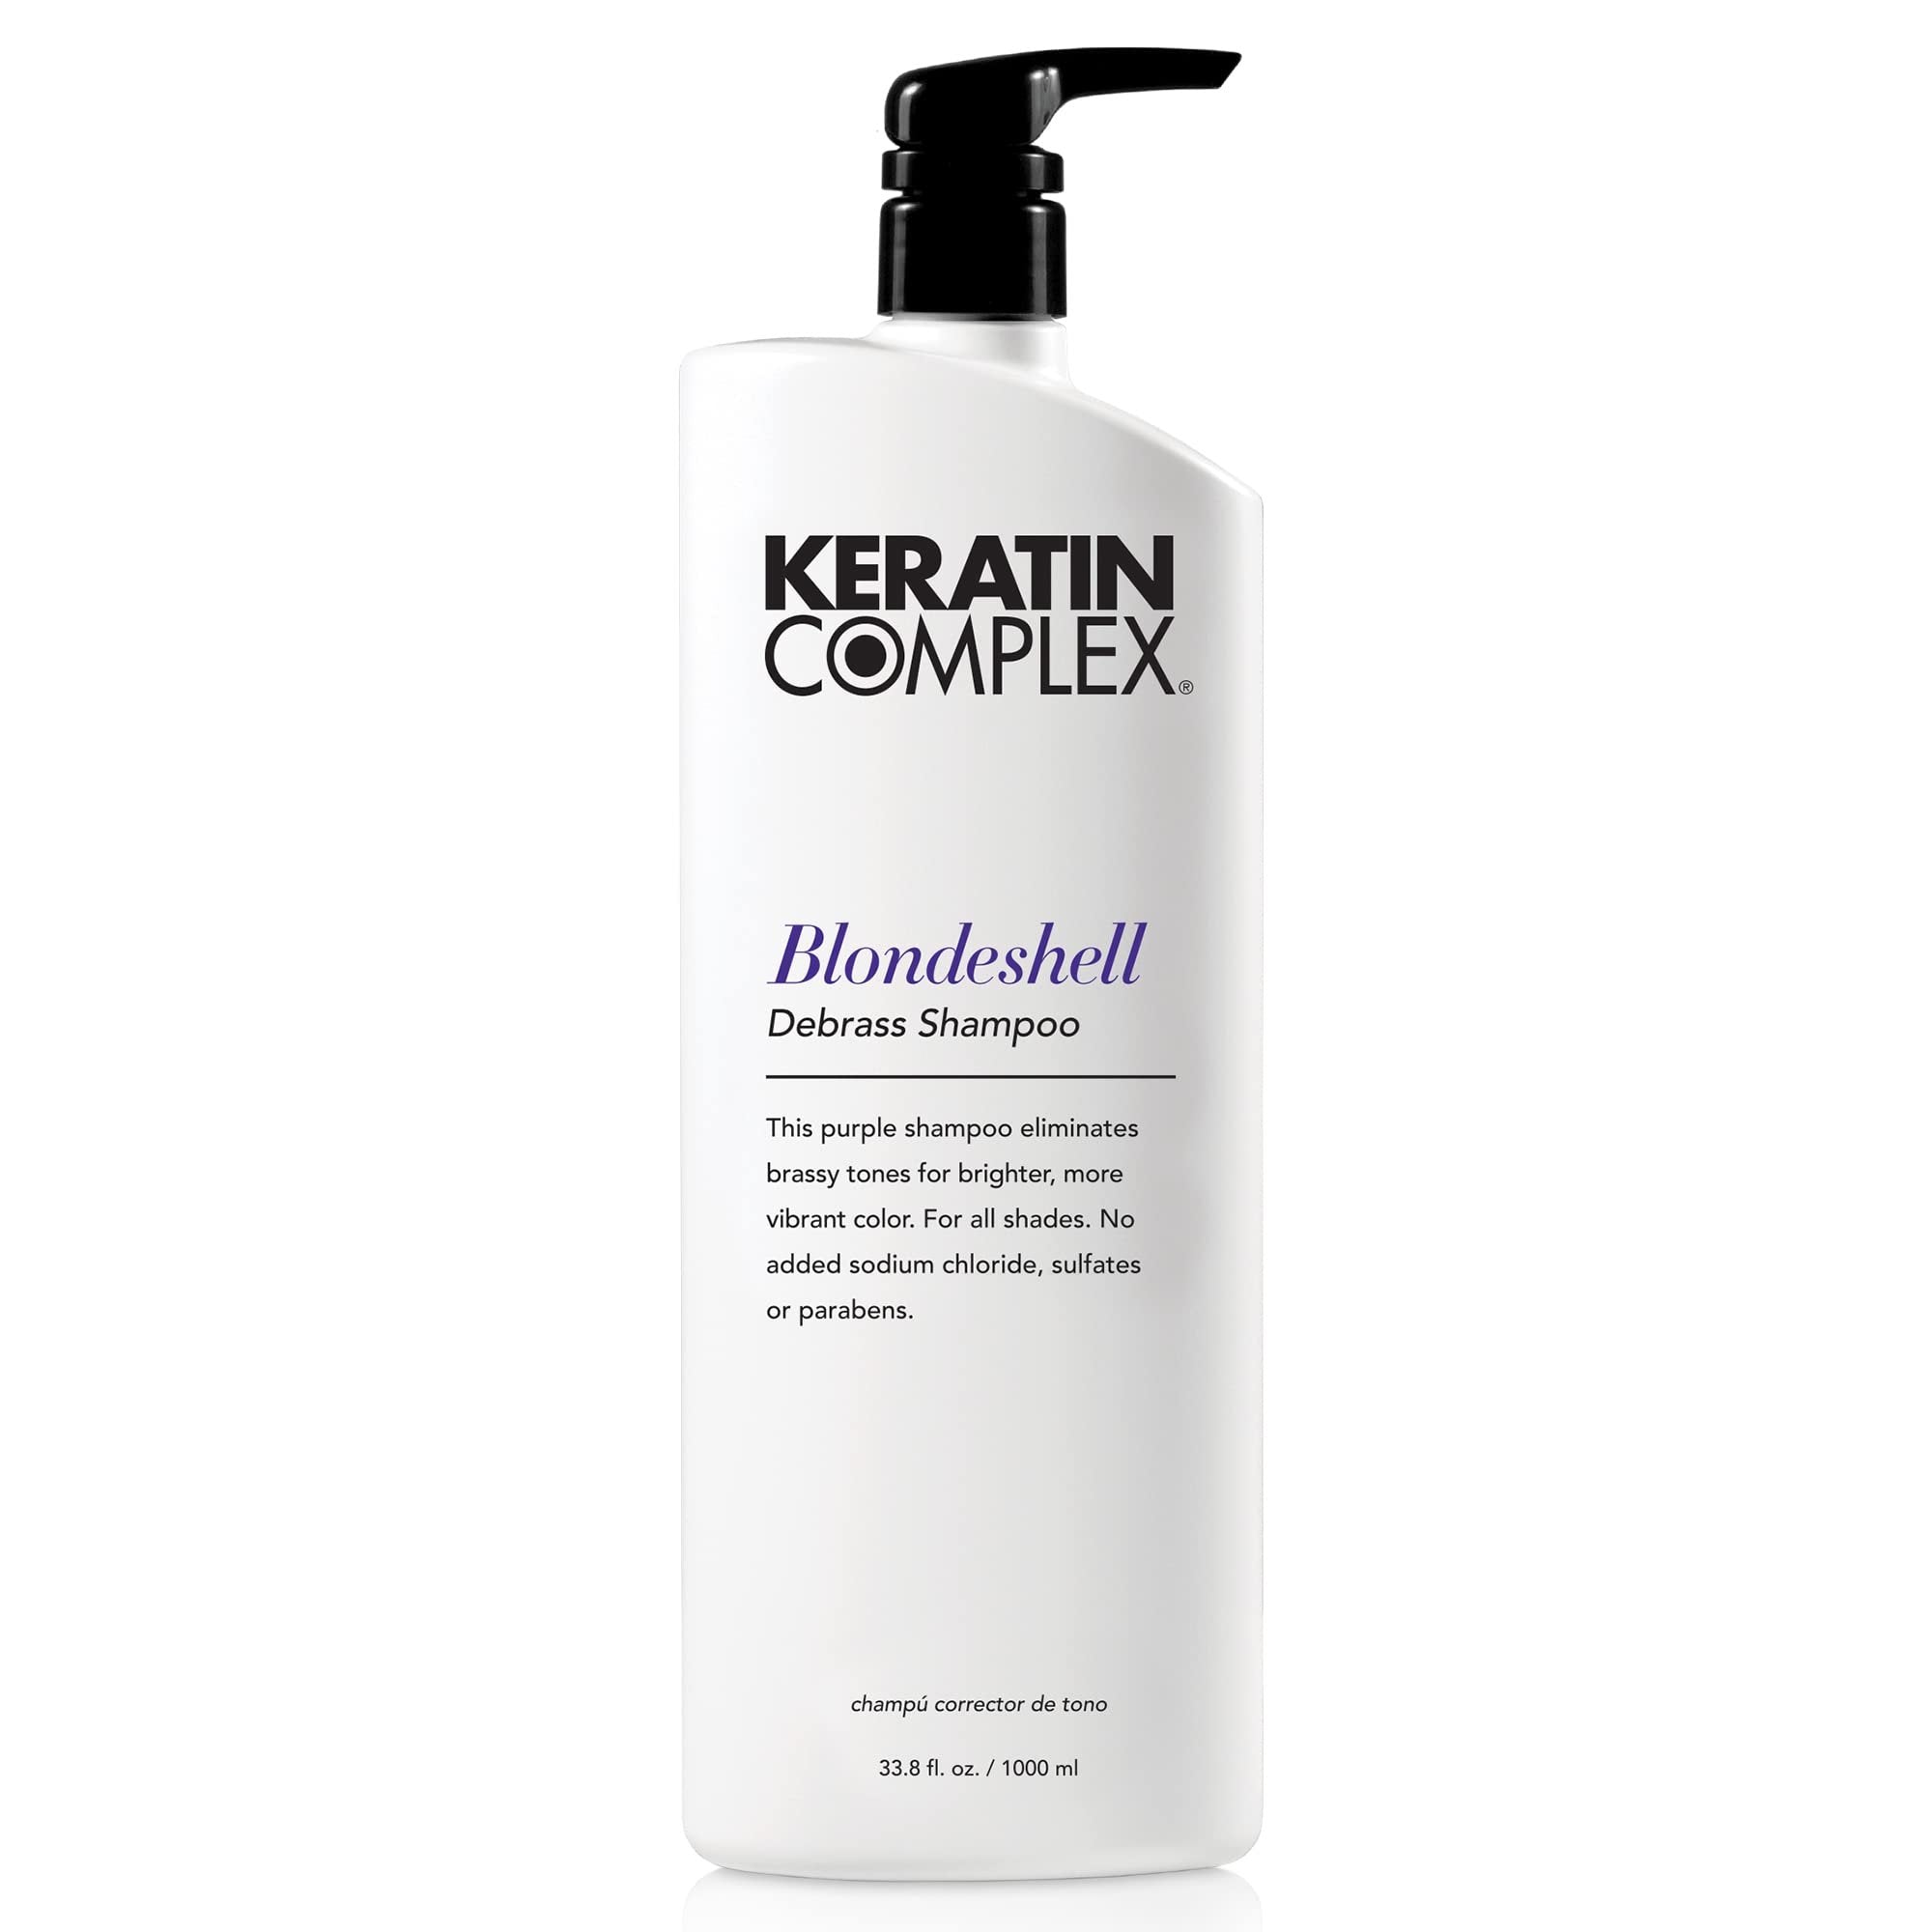 Keratin Complex Blondeshell Debrass Shampoo (33.8 oz.)